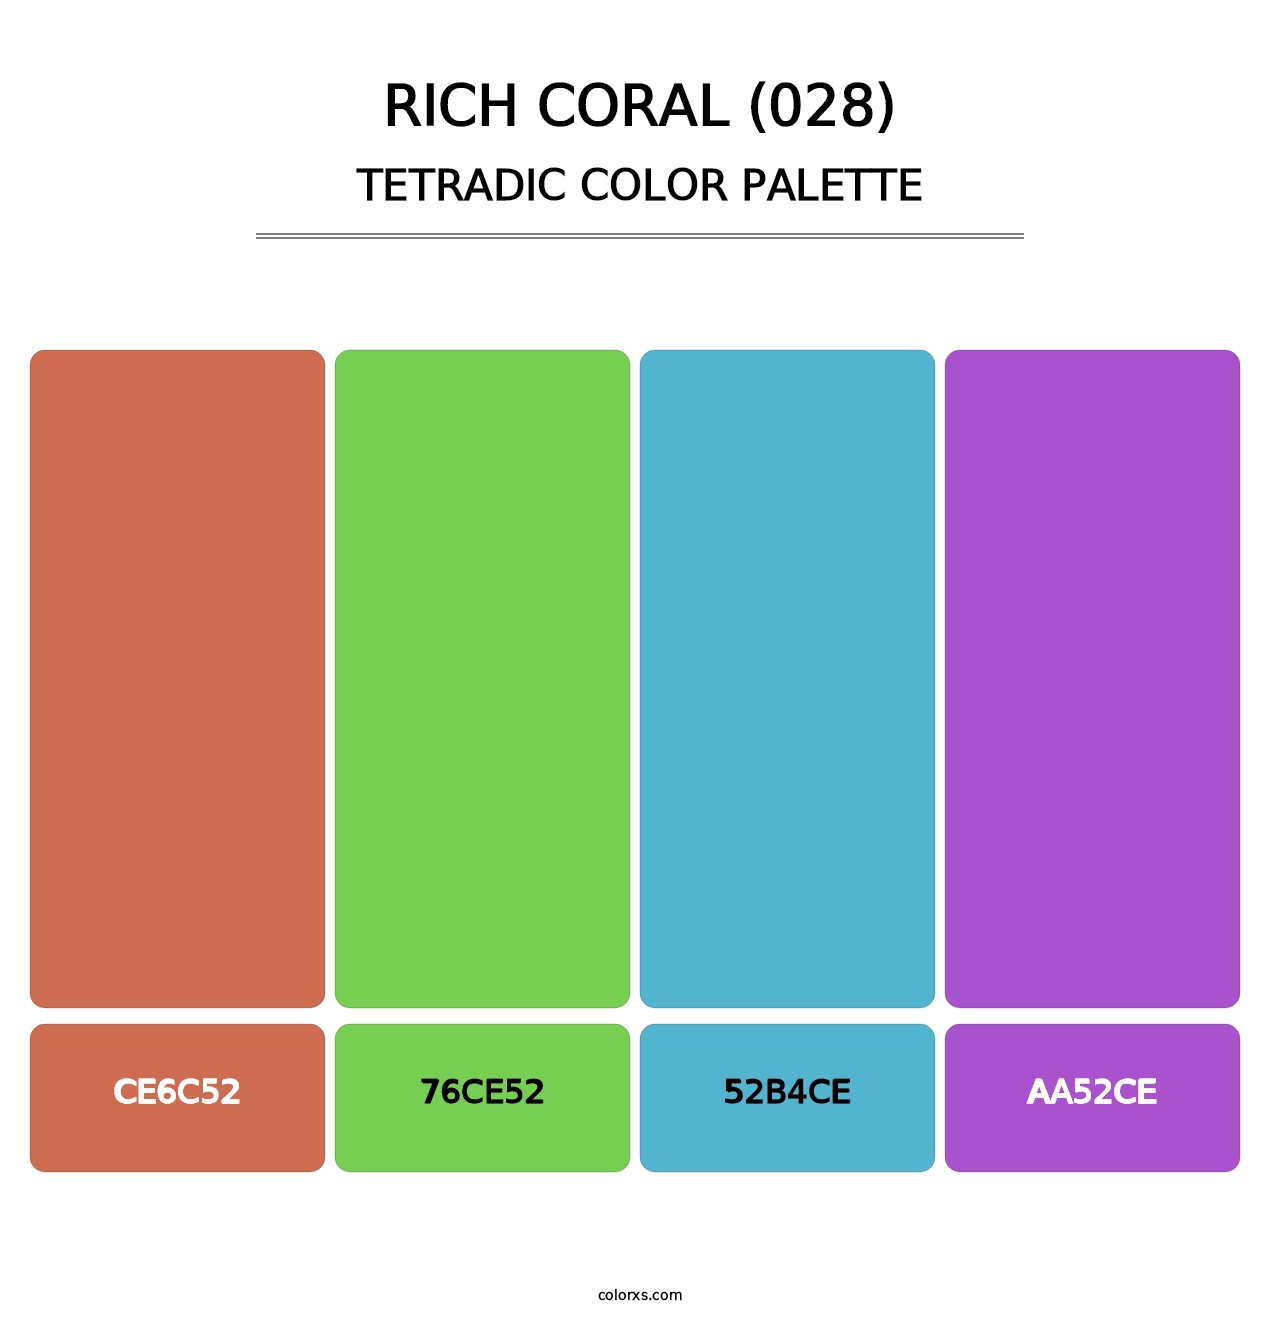 Rich Coral (028) - Tetradic Color Palette